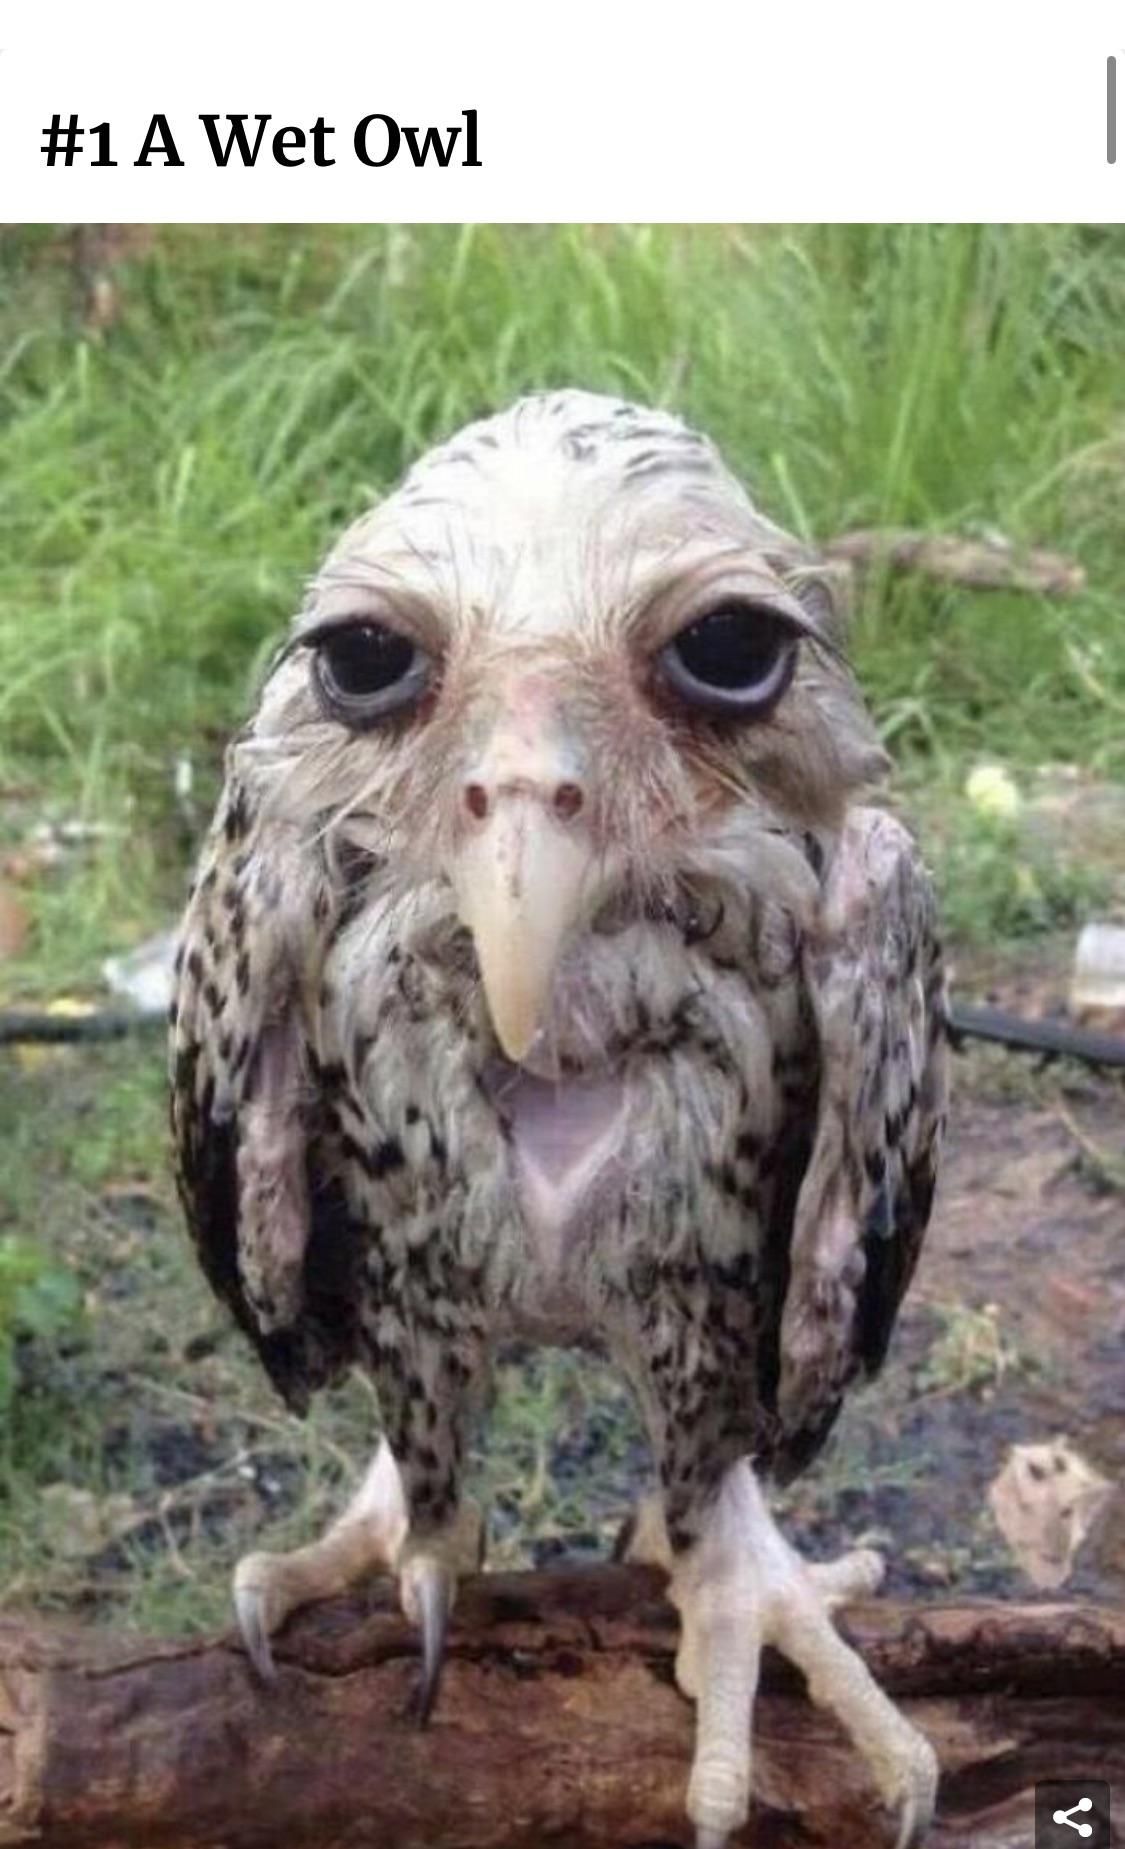 A wet owl